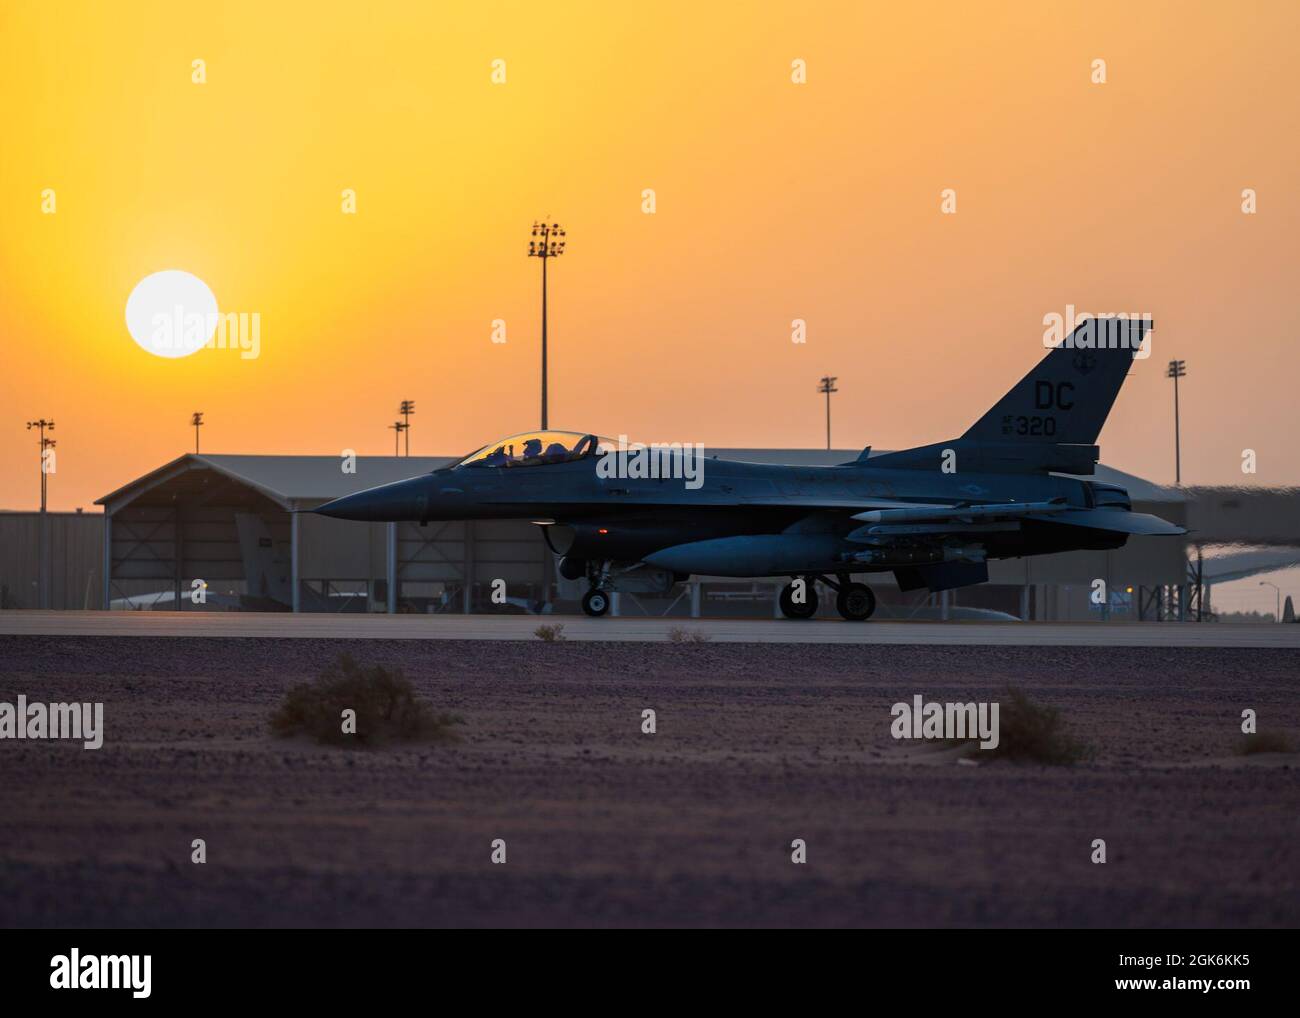 Un F-16 de la Force aérienne des États-Unis qui combat des taxis Falcon jusqu'à la piste de la base aérienne de Prince Sultan, Royaume d'Arabie saoudite, en préparation à une sortie de patrouille aérienne de combat dans la zone de responsabilité du Commandement central des États-Unis. La 378e Escadre expéditionnaire aérienne fournit un soutien aérien, des capacités logistiques, de la main-d'œuvre et des ressources au Centre de la Force aérienne des États-Unis pour appuyer les opérations d'évacuation non combattantes en cours. Banque D'Images